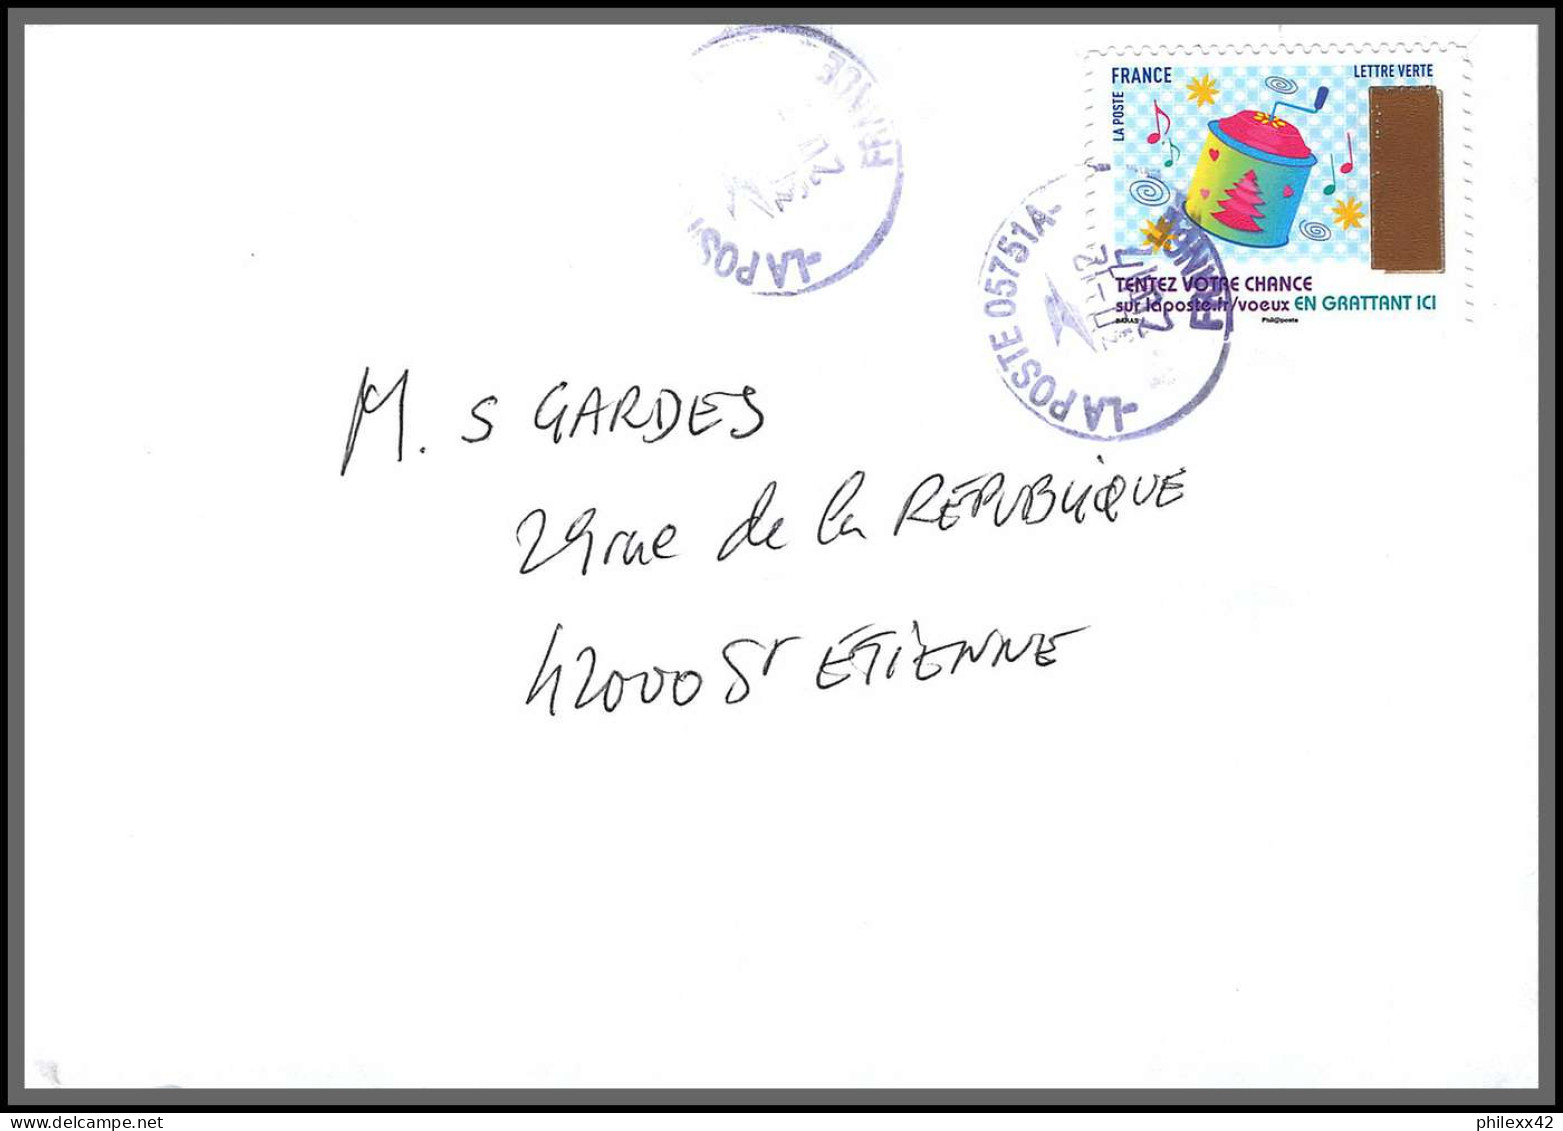 95918 - lot de 15 courriers lettres enveloppes de l'année 2017 divers affranchissements en EUROS